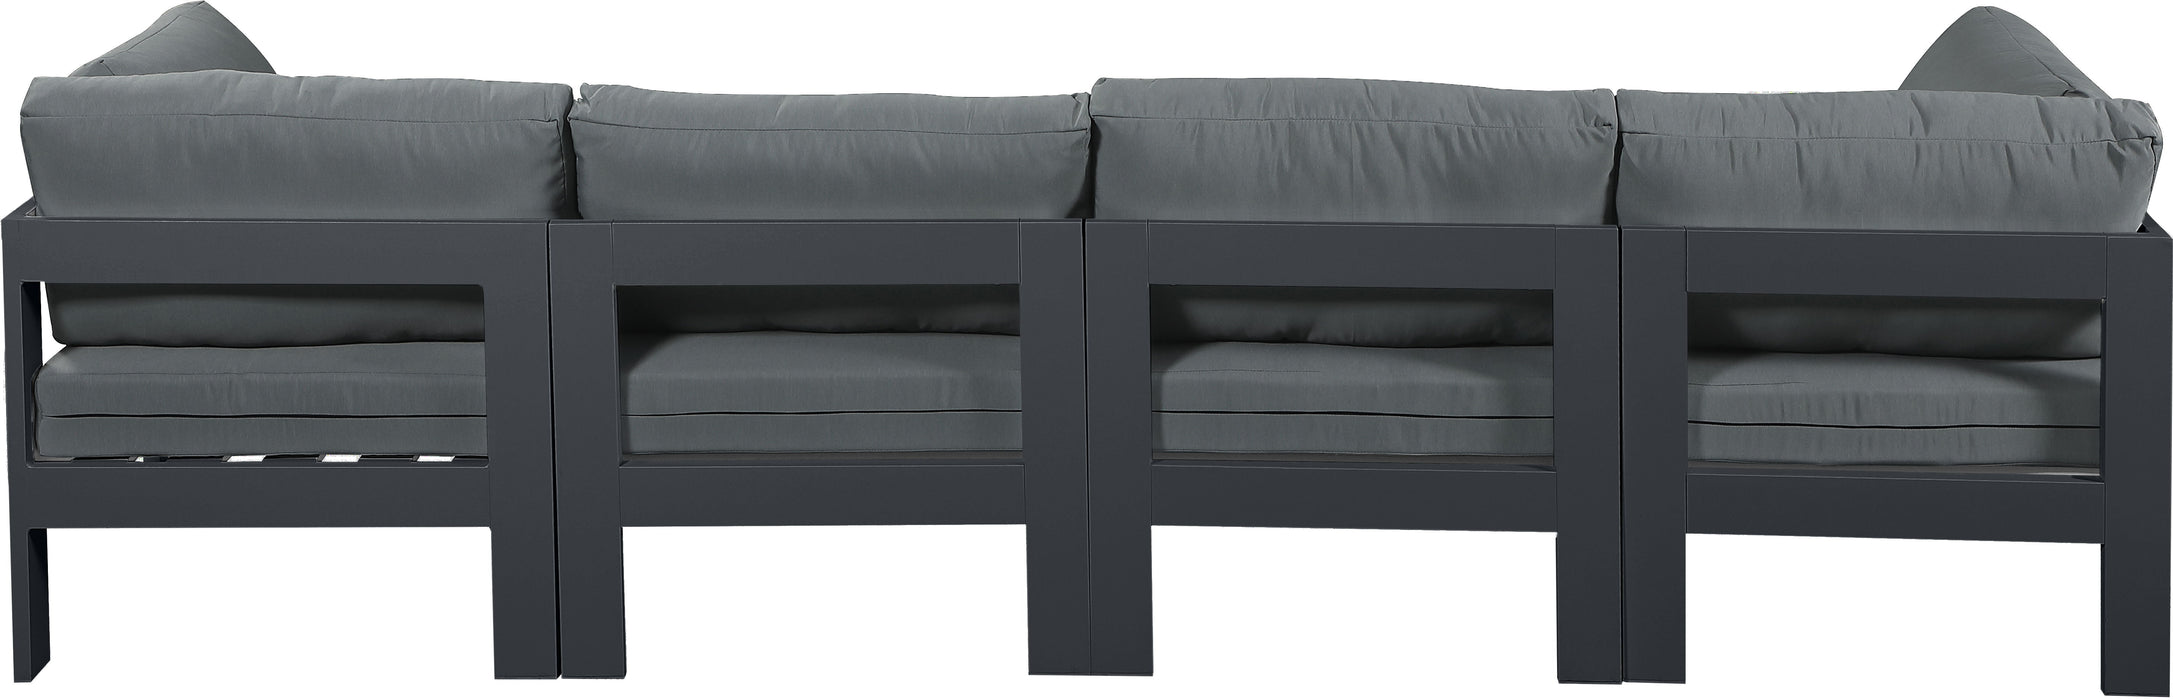 Nizuc - Outdoor Patio Modular Sofa - Dark Grey - Modern & Contemporary